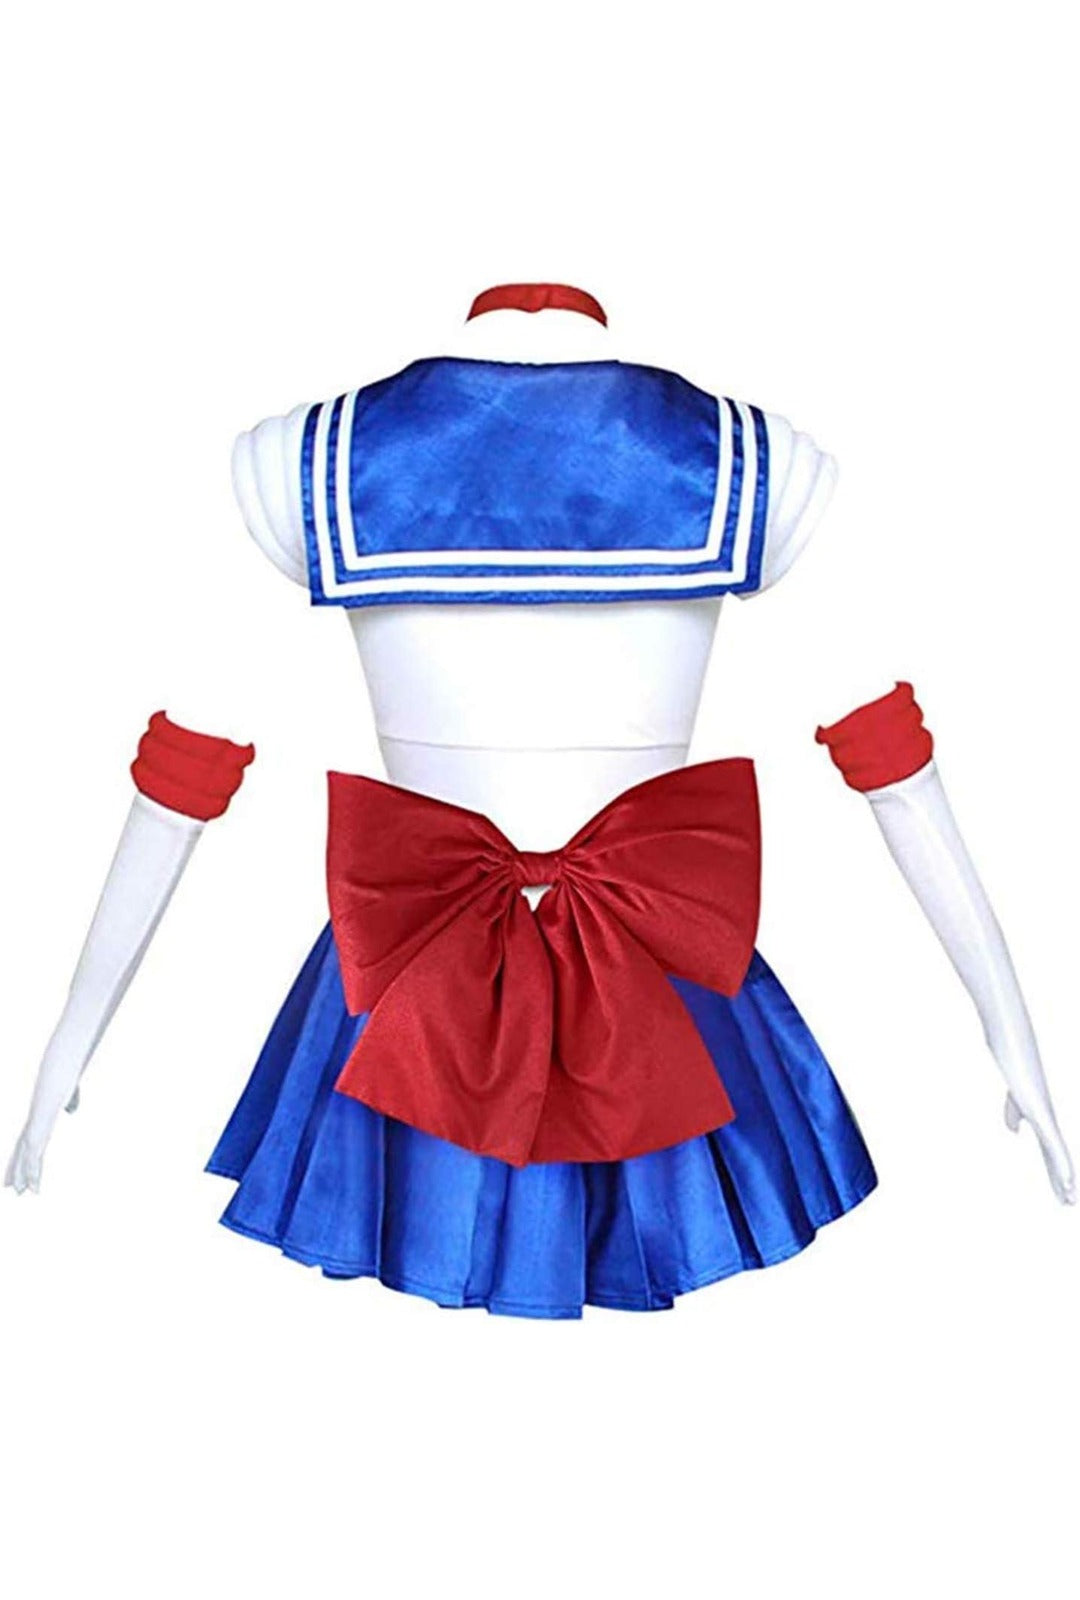 Deluxe Sailor Moon Costume